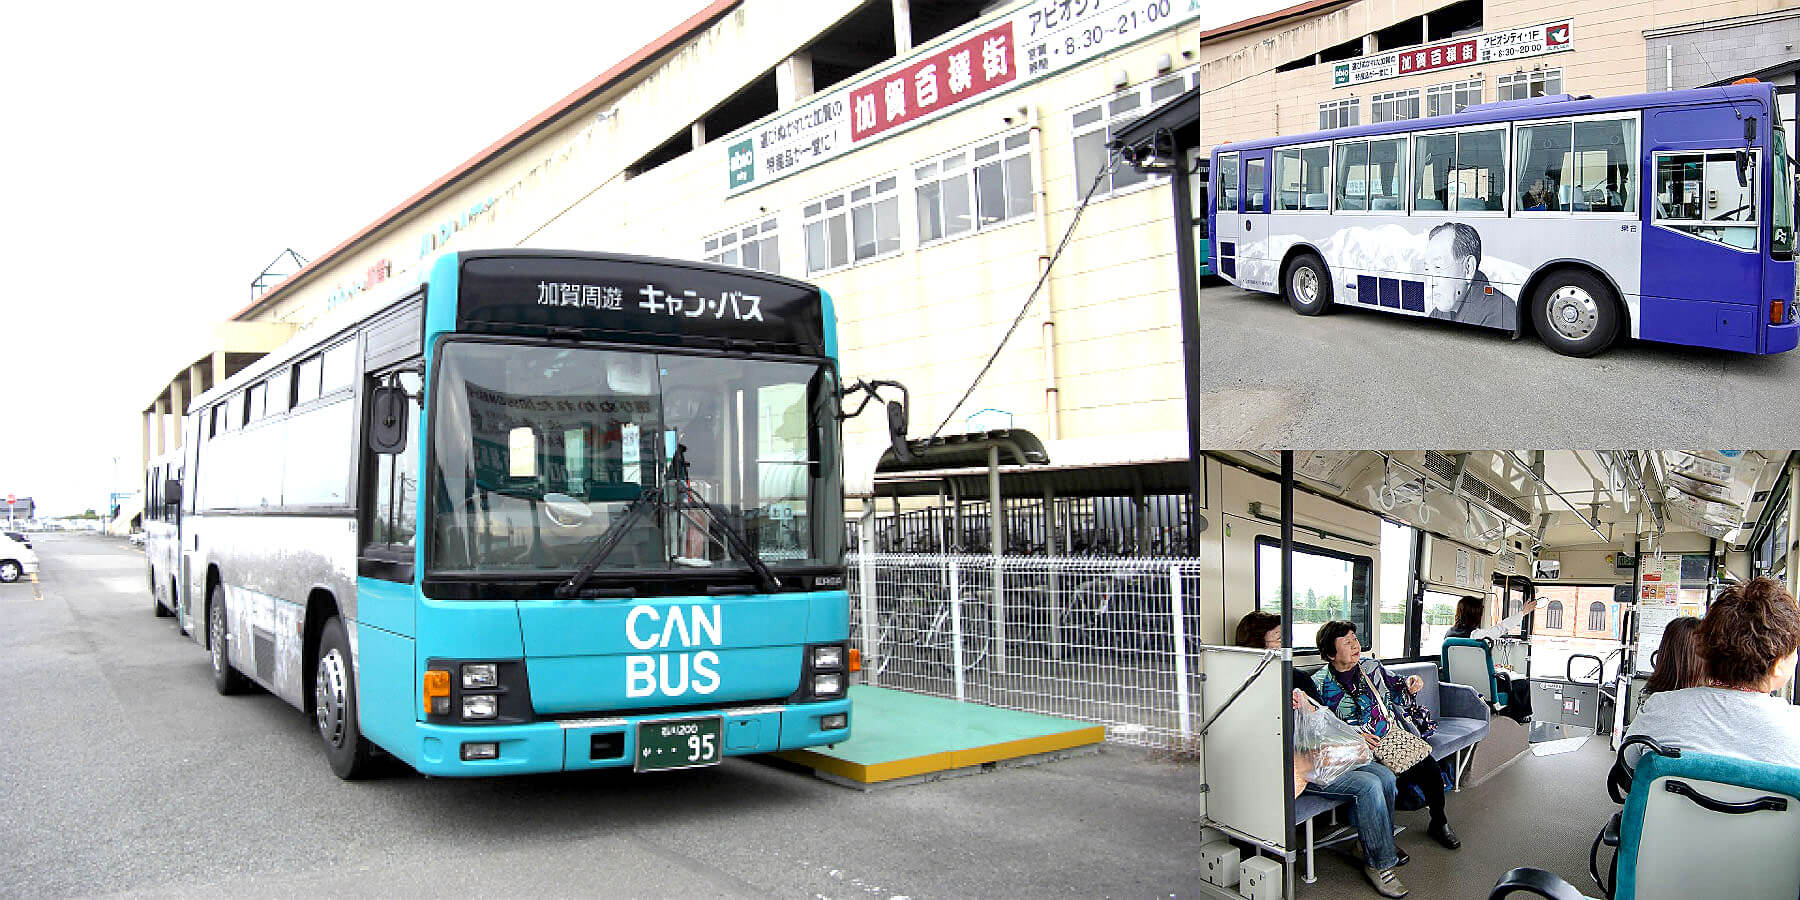 加賀周遊バス「キャン・バス」